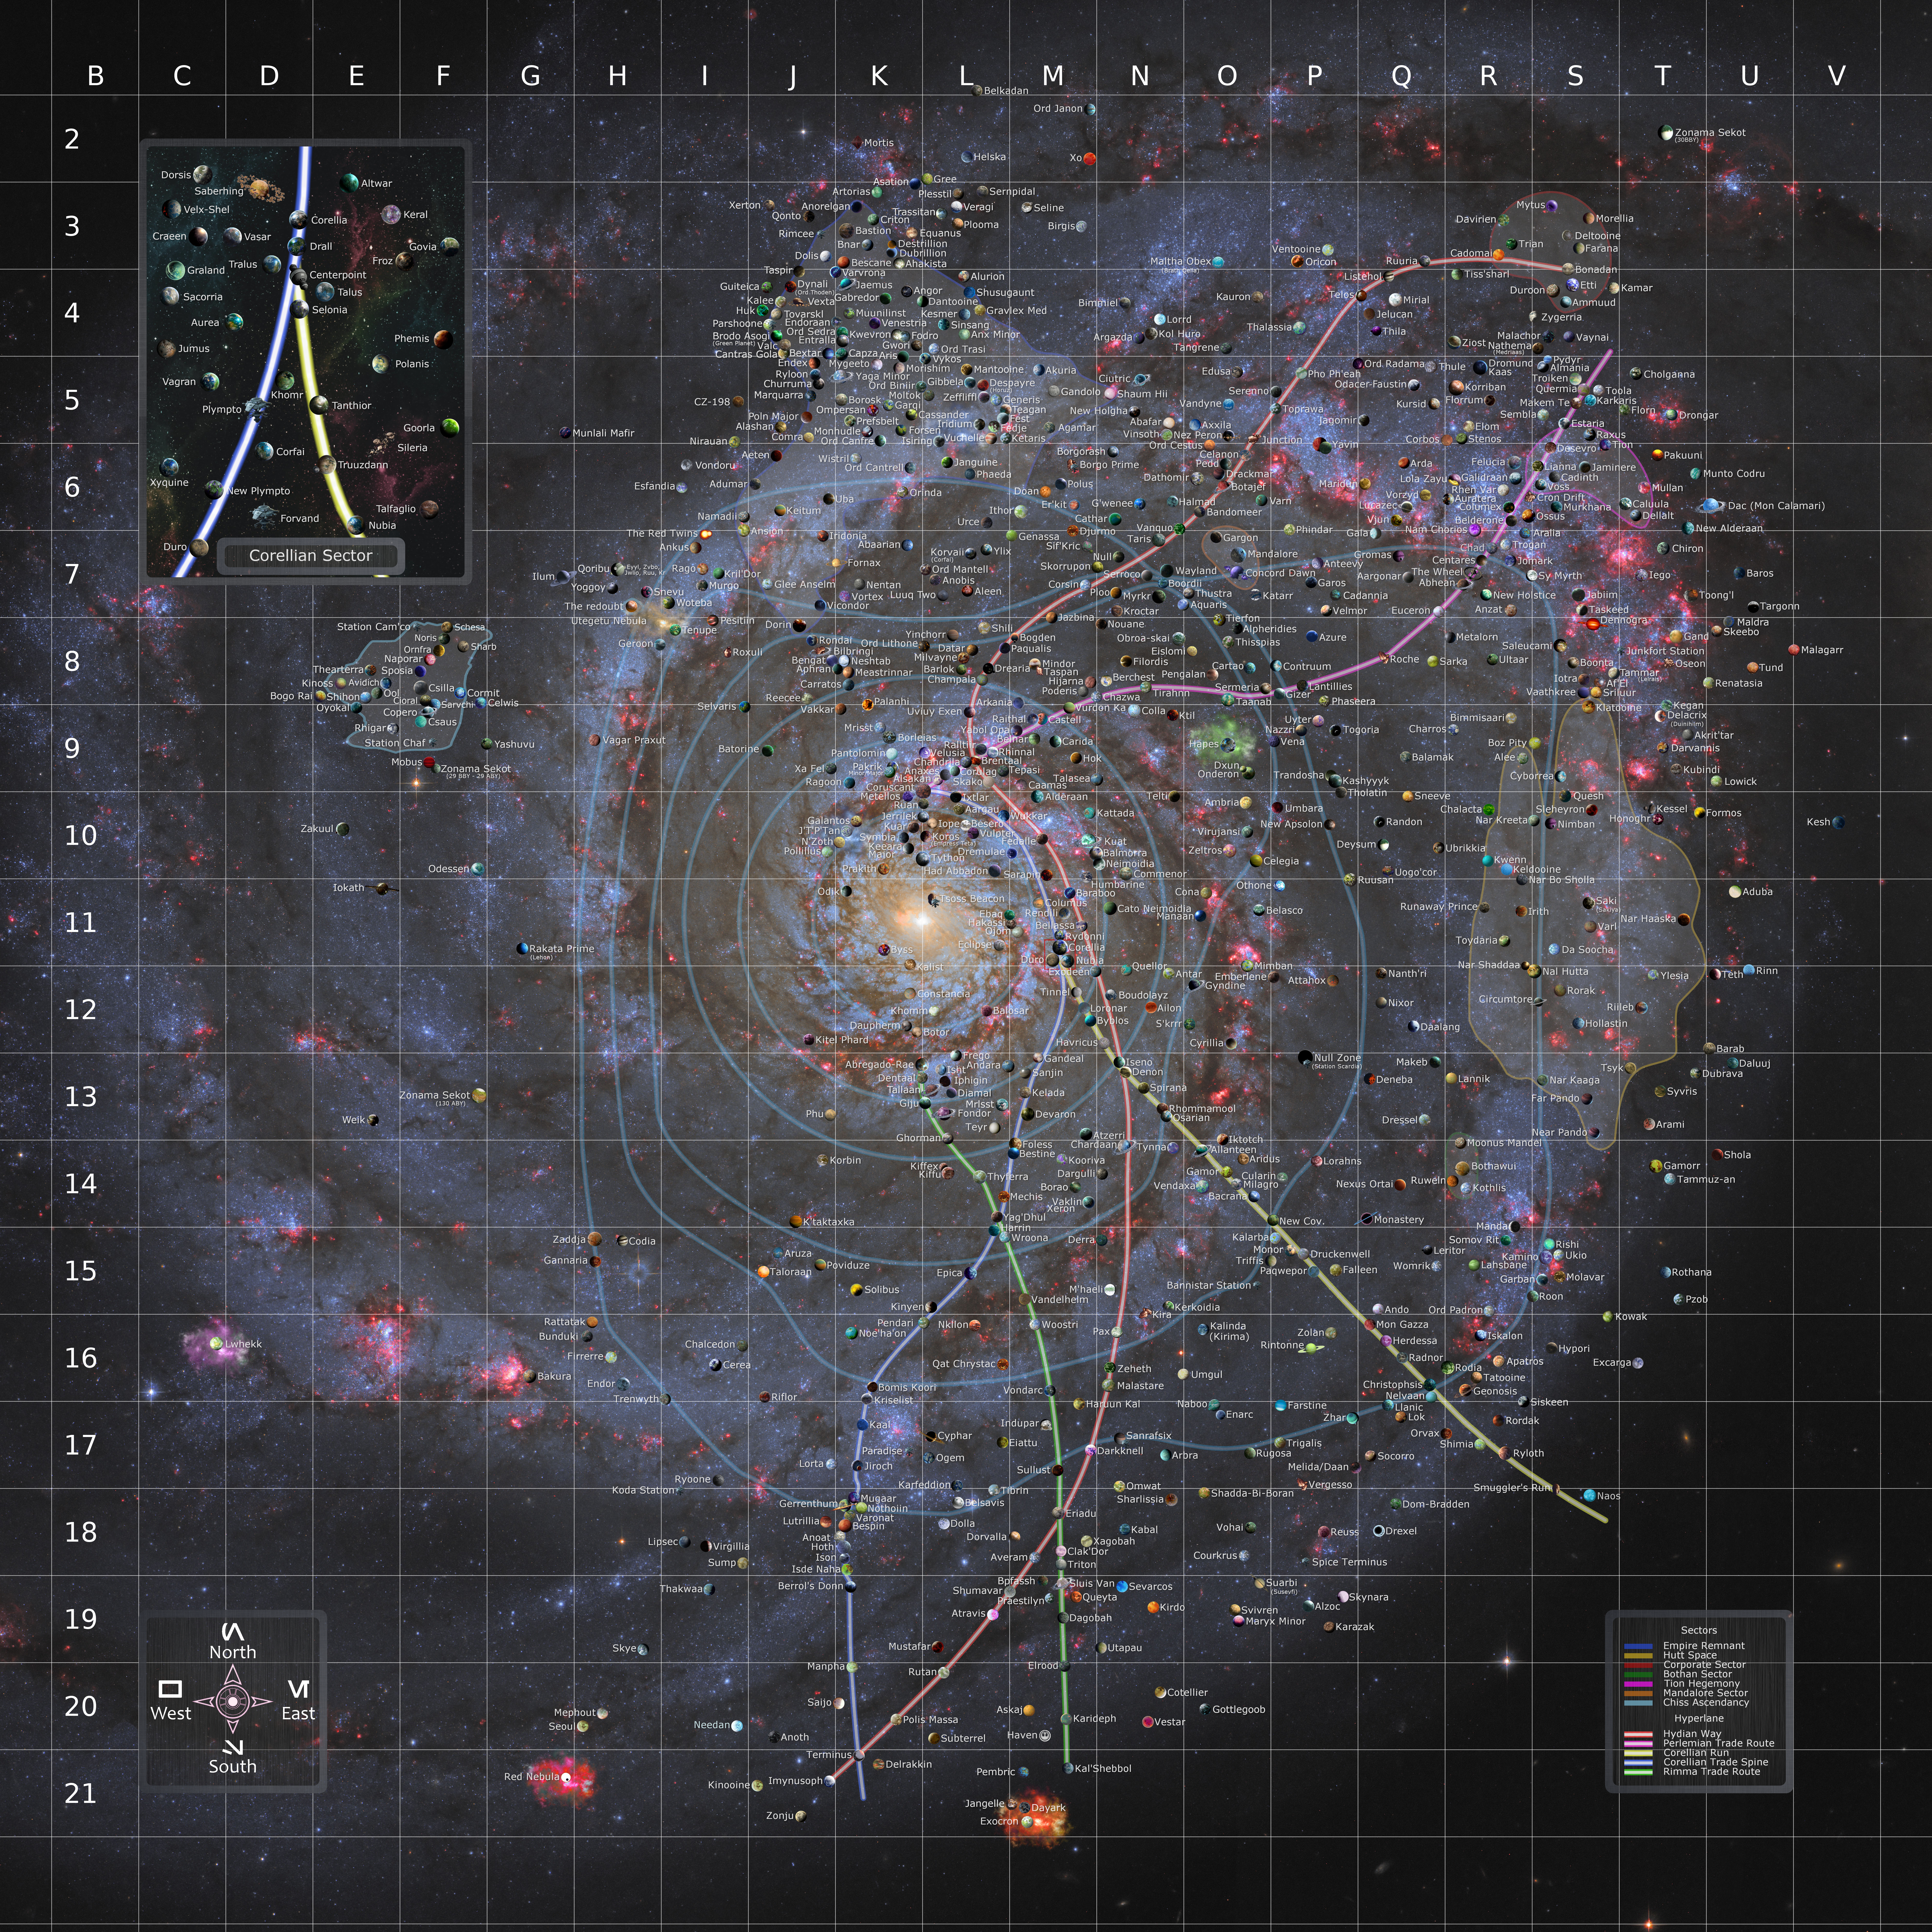 Carte Galactique  Deumbov-995f1d6f-01d5-40bc-89d1-2879589b87b6.jpg?token=eyJ0eXAiOiJKV1QiLCJhbGciOiJIUzI1NiJ9.eyJzdWIiOiJ1cm46YXBwOjdlMGQxODg5ODIyNjQzNzNhNWYwZDQxNWVhMGQyNmUwIiwiaXNzIjoidXJuOmFwcDo3ZTBkMTg4OTgyMjY0MzczYTVmMGQ0MTVlYTBkMjZlMCIsIm9iaiI6W1t7InBhdGgiOiJcL2ZcLzRiMzIzMTdhLWI2NDMtNDdlZC1iOTRkLTMwODc3NTk3ZTYzYlwvZGV1bWJvdi05OTVmMWQ2Zi0wMWQ1LTQwYmMtODlkMS0yODc5NTg5Yjg3YjYuanBnIn1dXSwiYXVkIjpbInVybjpzZXJ2aWNlOmZpbGUuZG93bmxvYWQiXX0